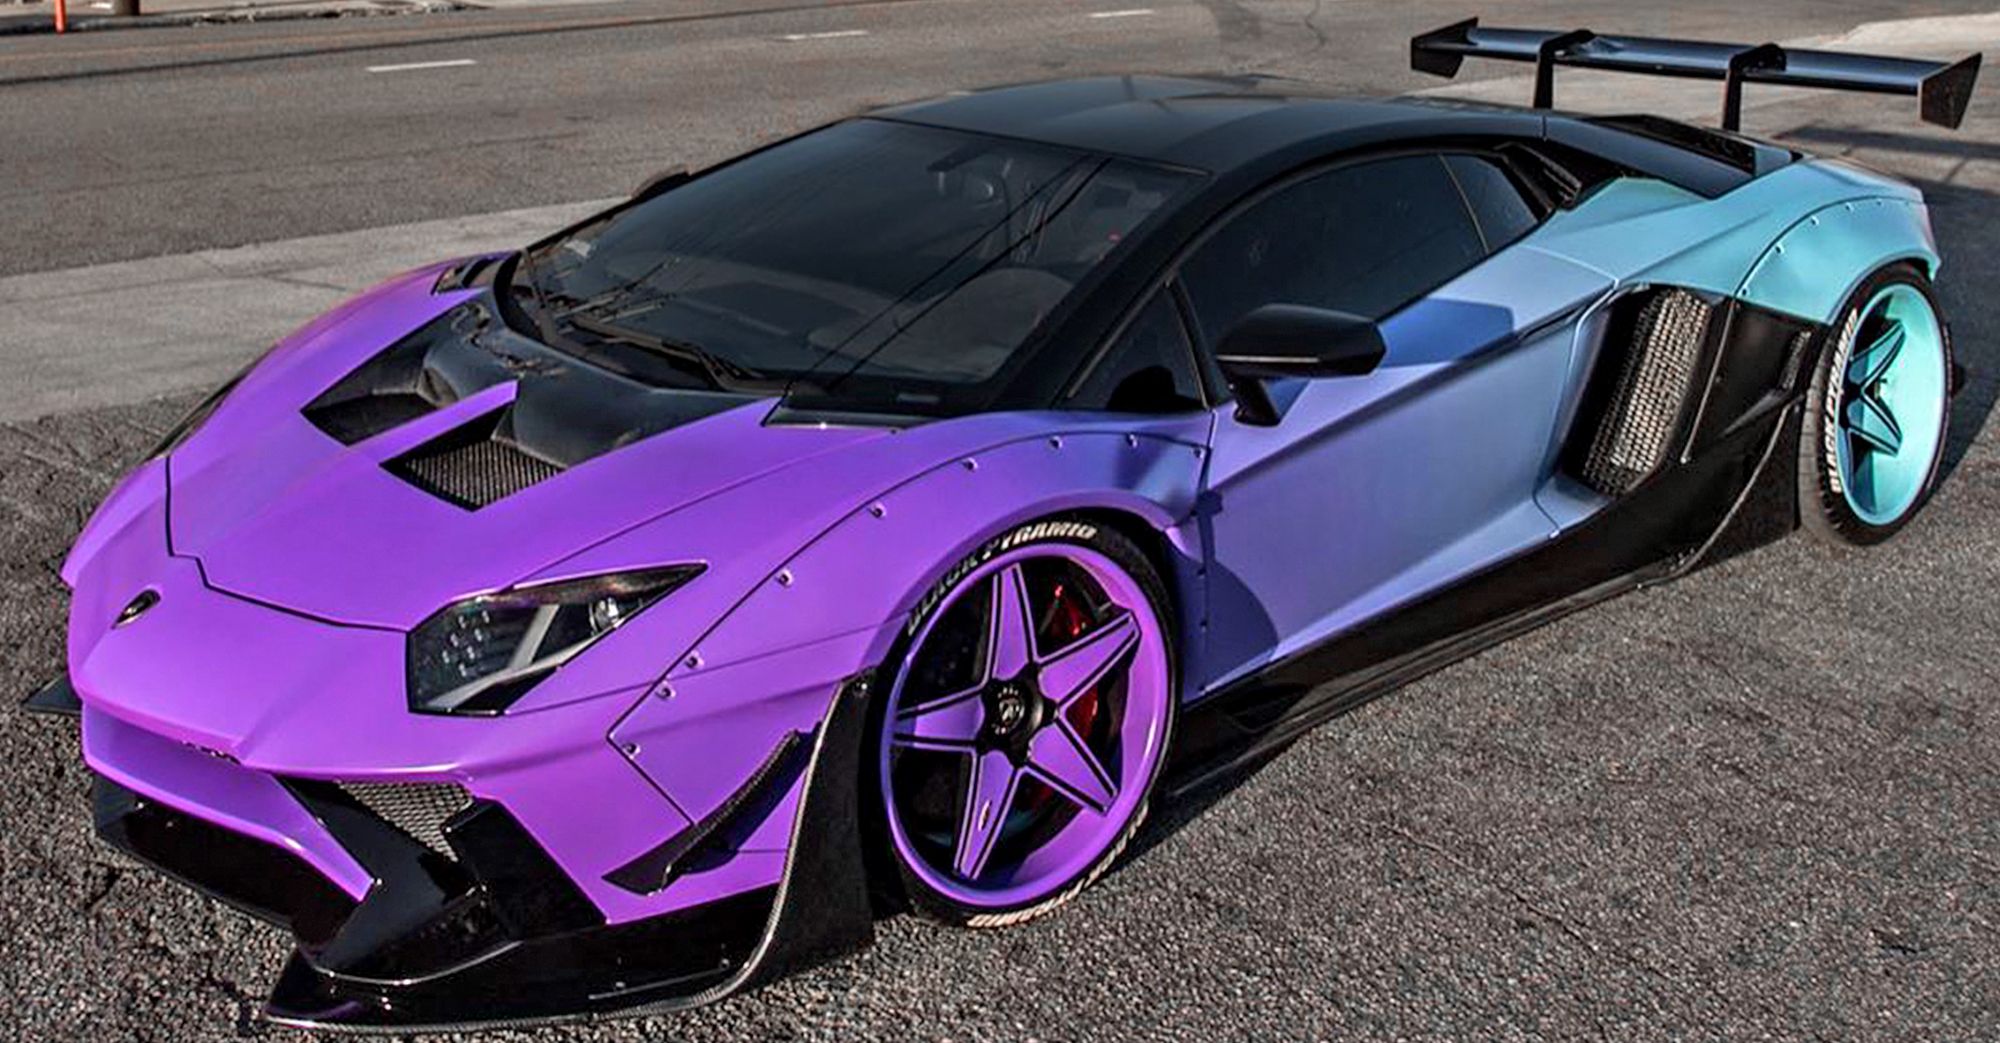 Chris Brown’s Widebody Lamborghini Aventador SV